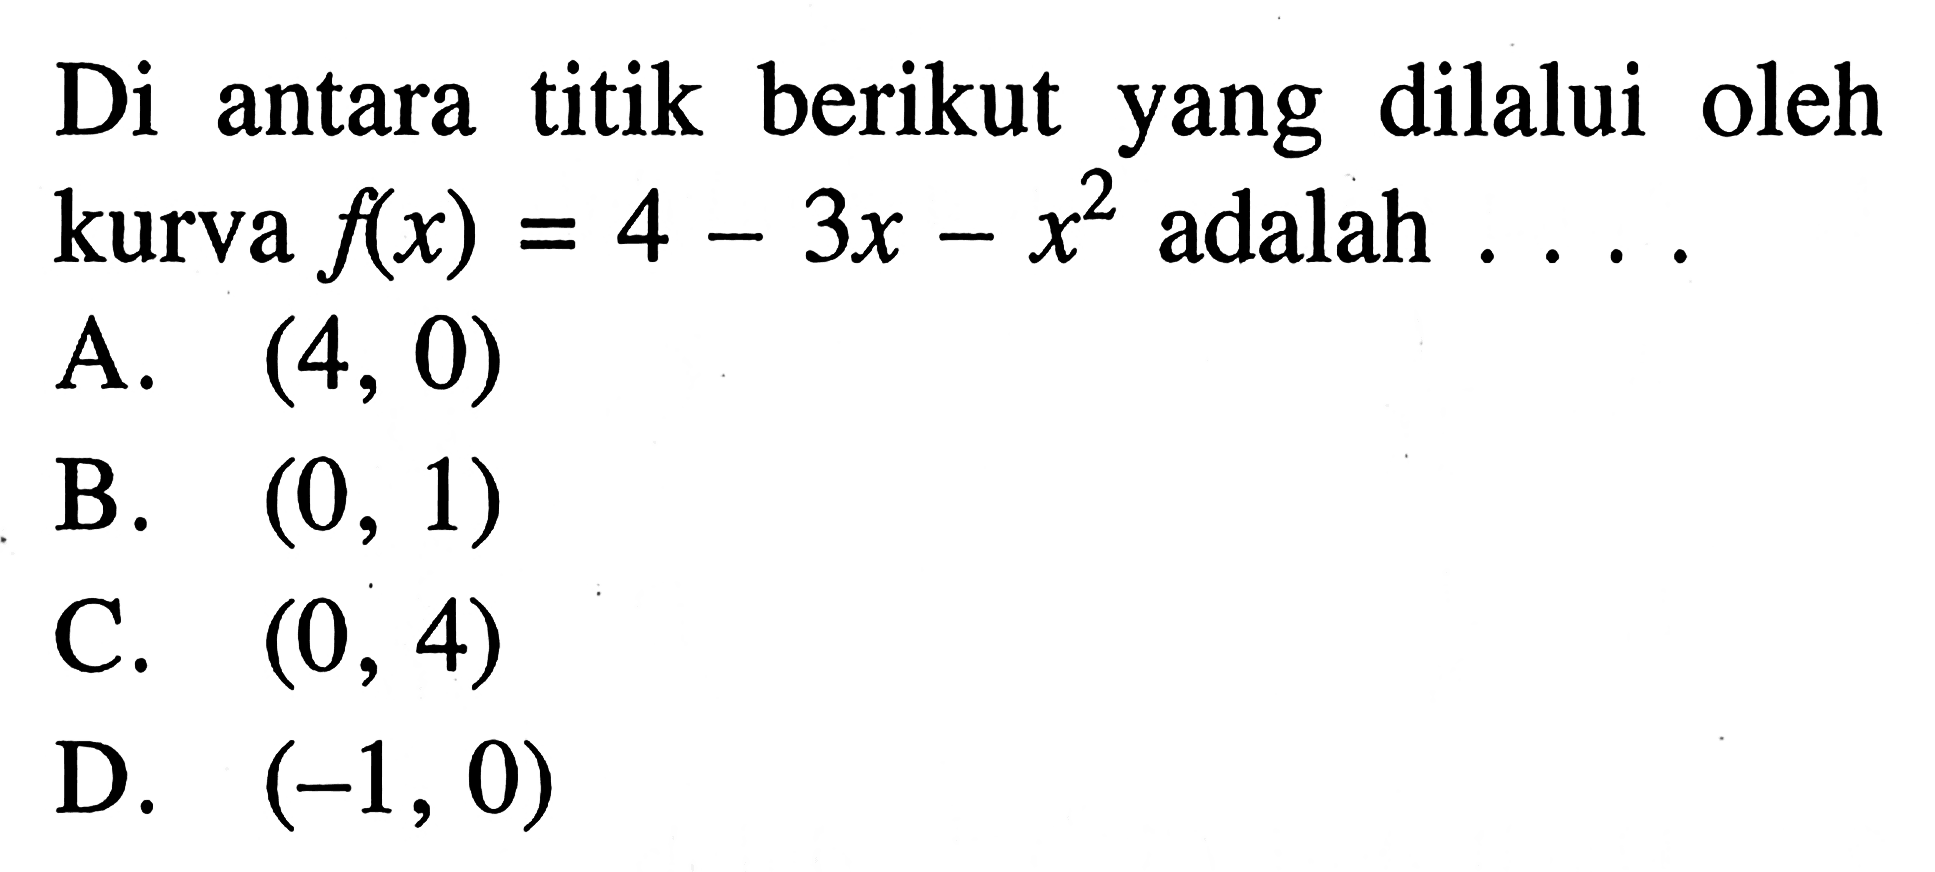 Di antara titik berikut yang dilalui oleh kurva f(x) = 4 - 3x - x^2 adalah A. (4, 0) B. (0, 1) C. (0, 4) D. (-1, 0)